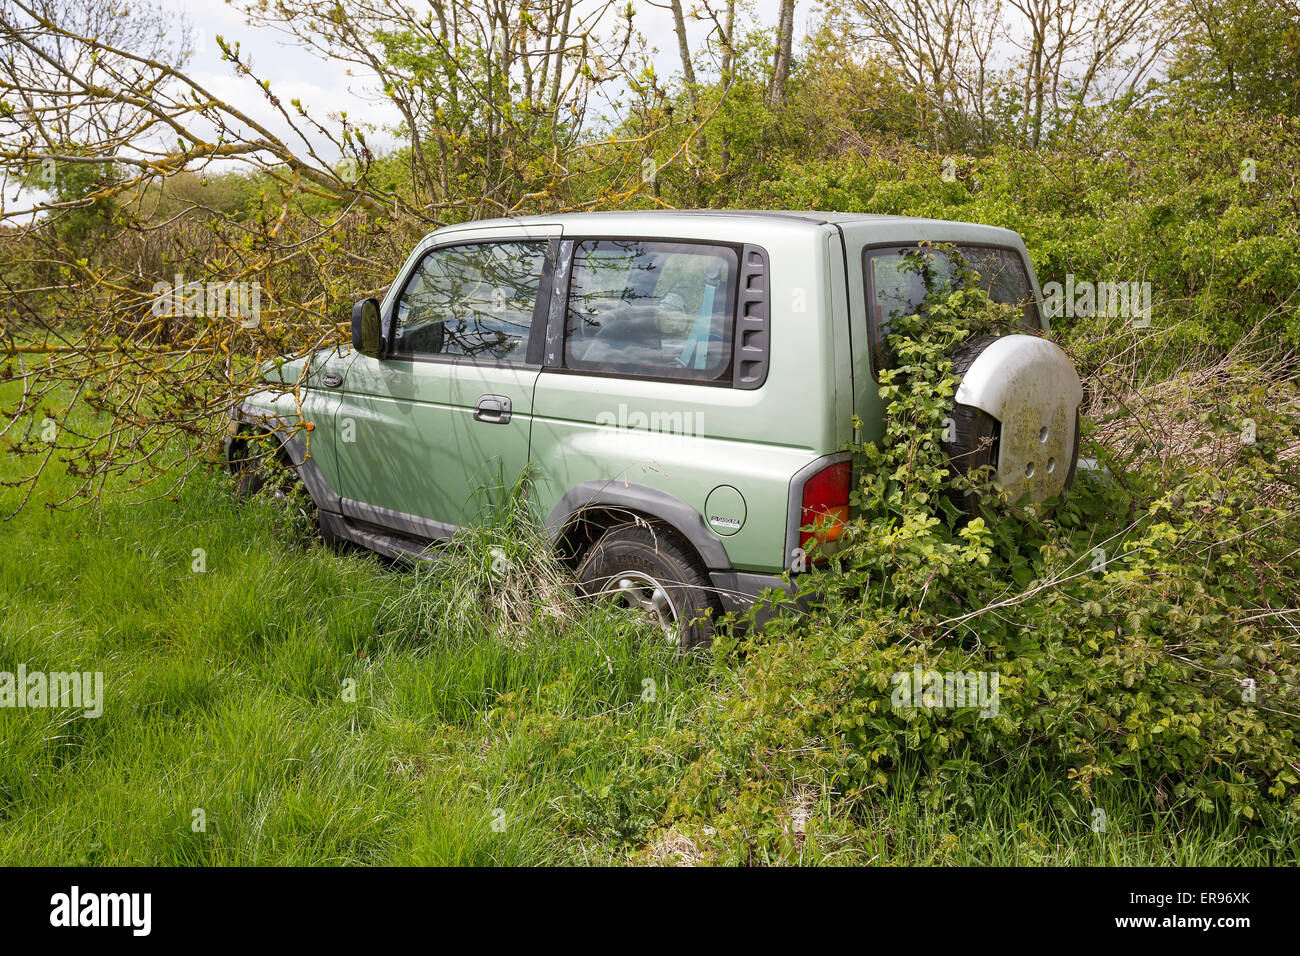 Sovradimensionate auto abbandonate nei pressi di hedge Foto Stock